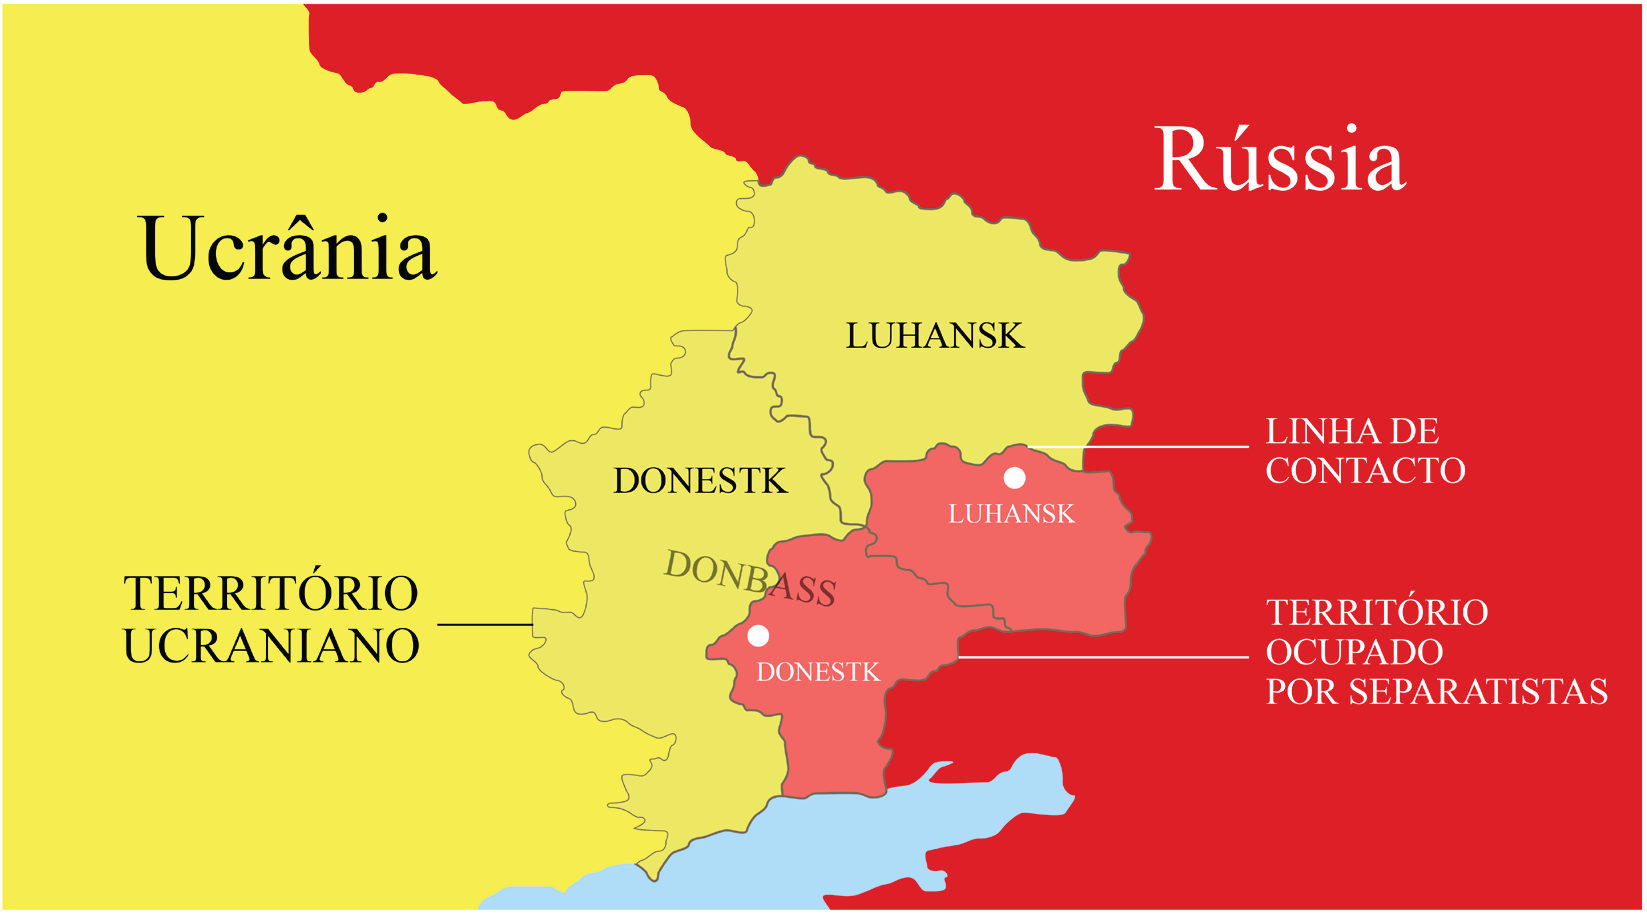 Figura 2 – Cerco russo ao território ucraniano. Fonte: Reprodução de mapa publicado pela CNN Portugal (2022).